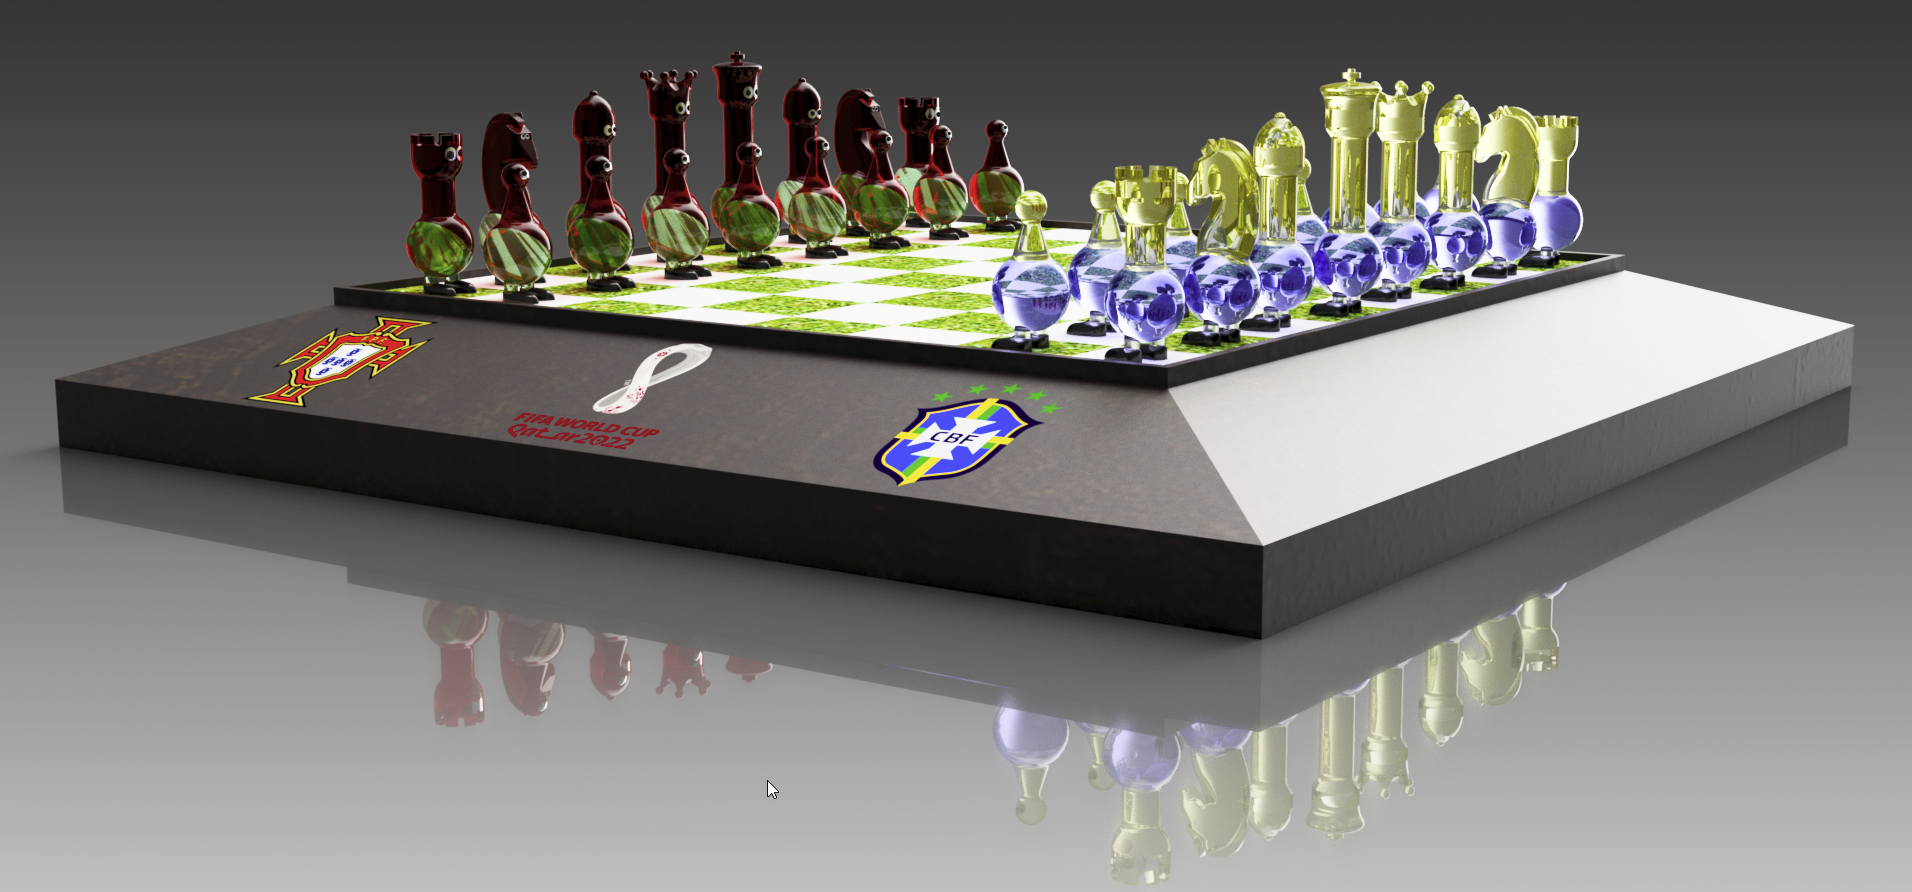 Aula 450 - Modelamento do Peão peça do Jogo de Xadrez no Fusion